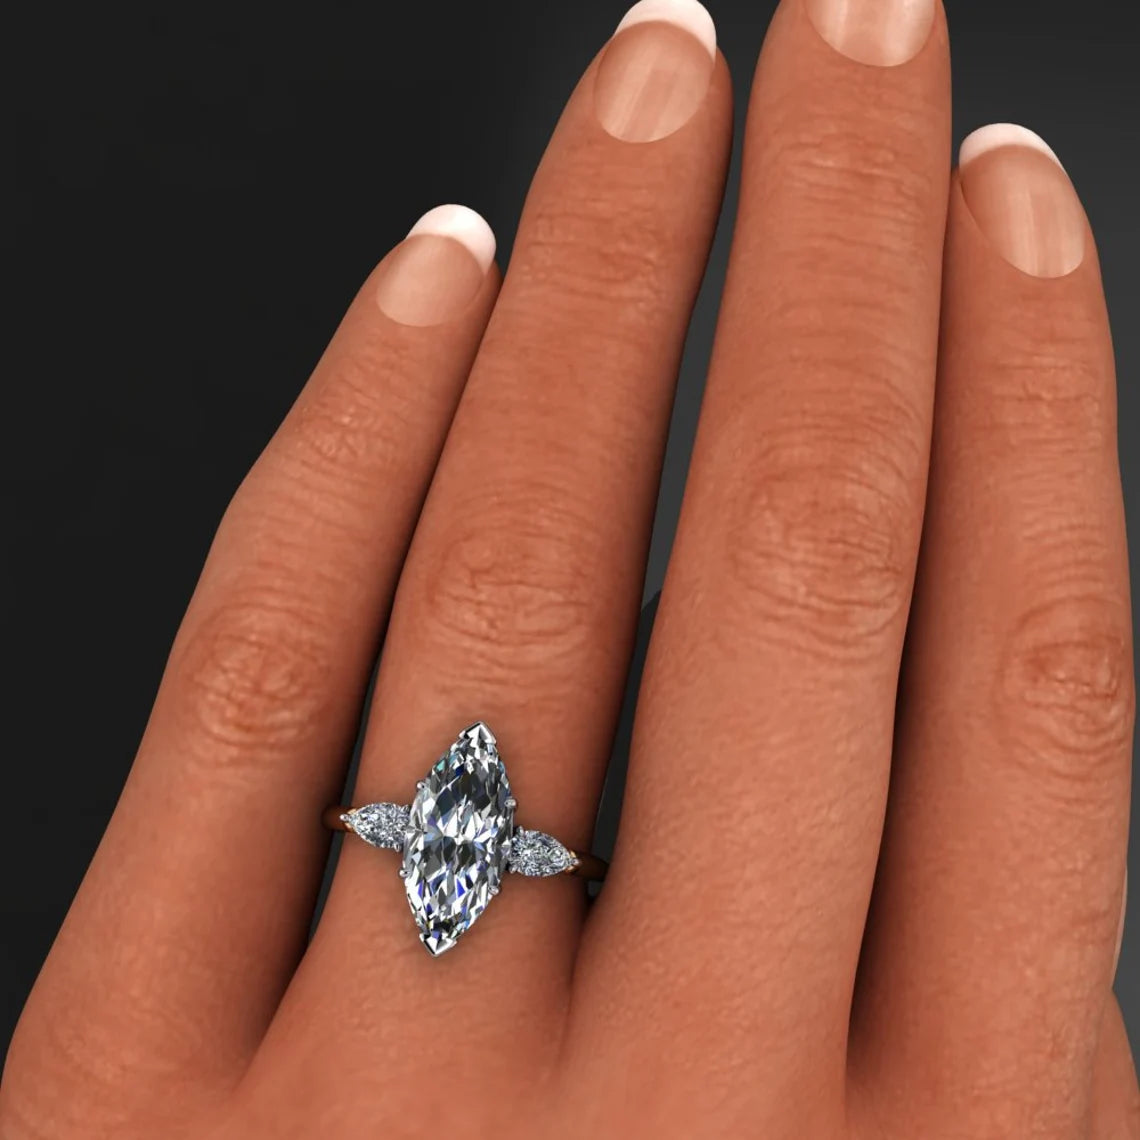 erica ring - 3 carat marquise moissanite engagement ring, ZAYA moissanite 3 stone ring - J Hollywood Designs